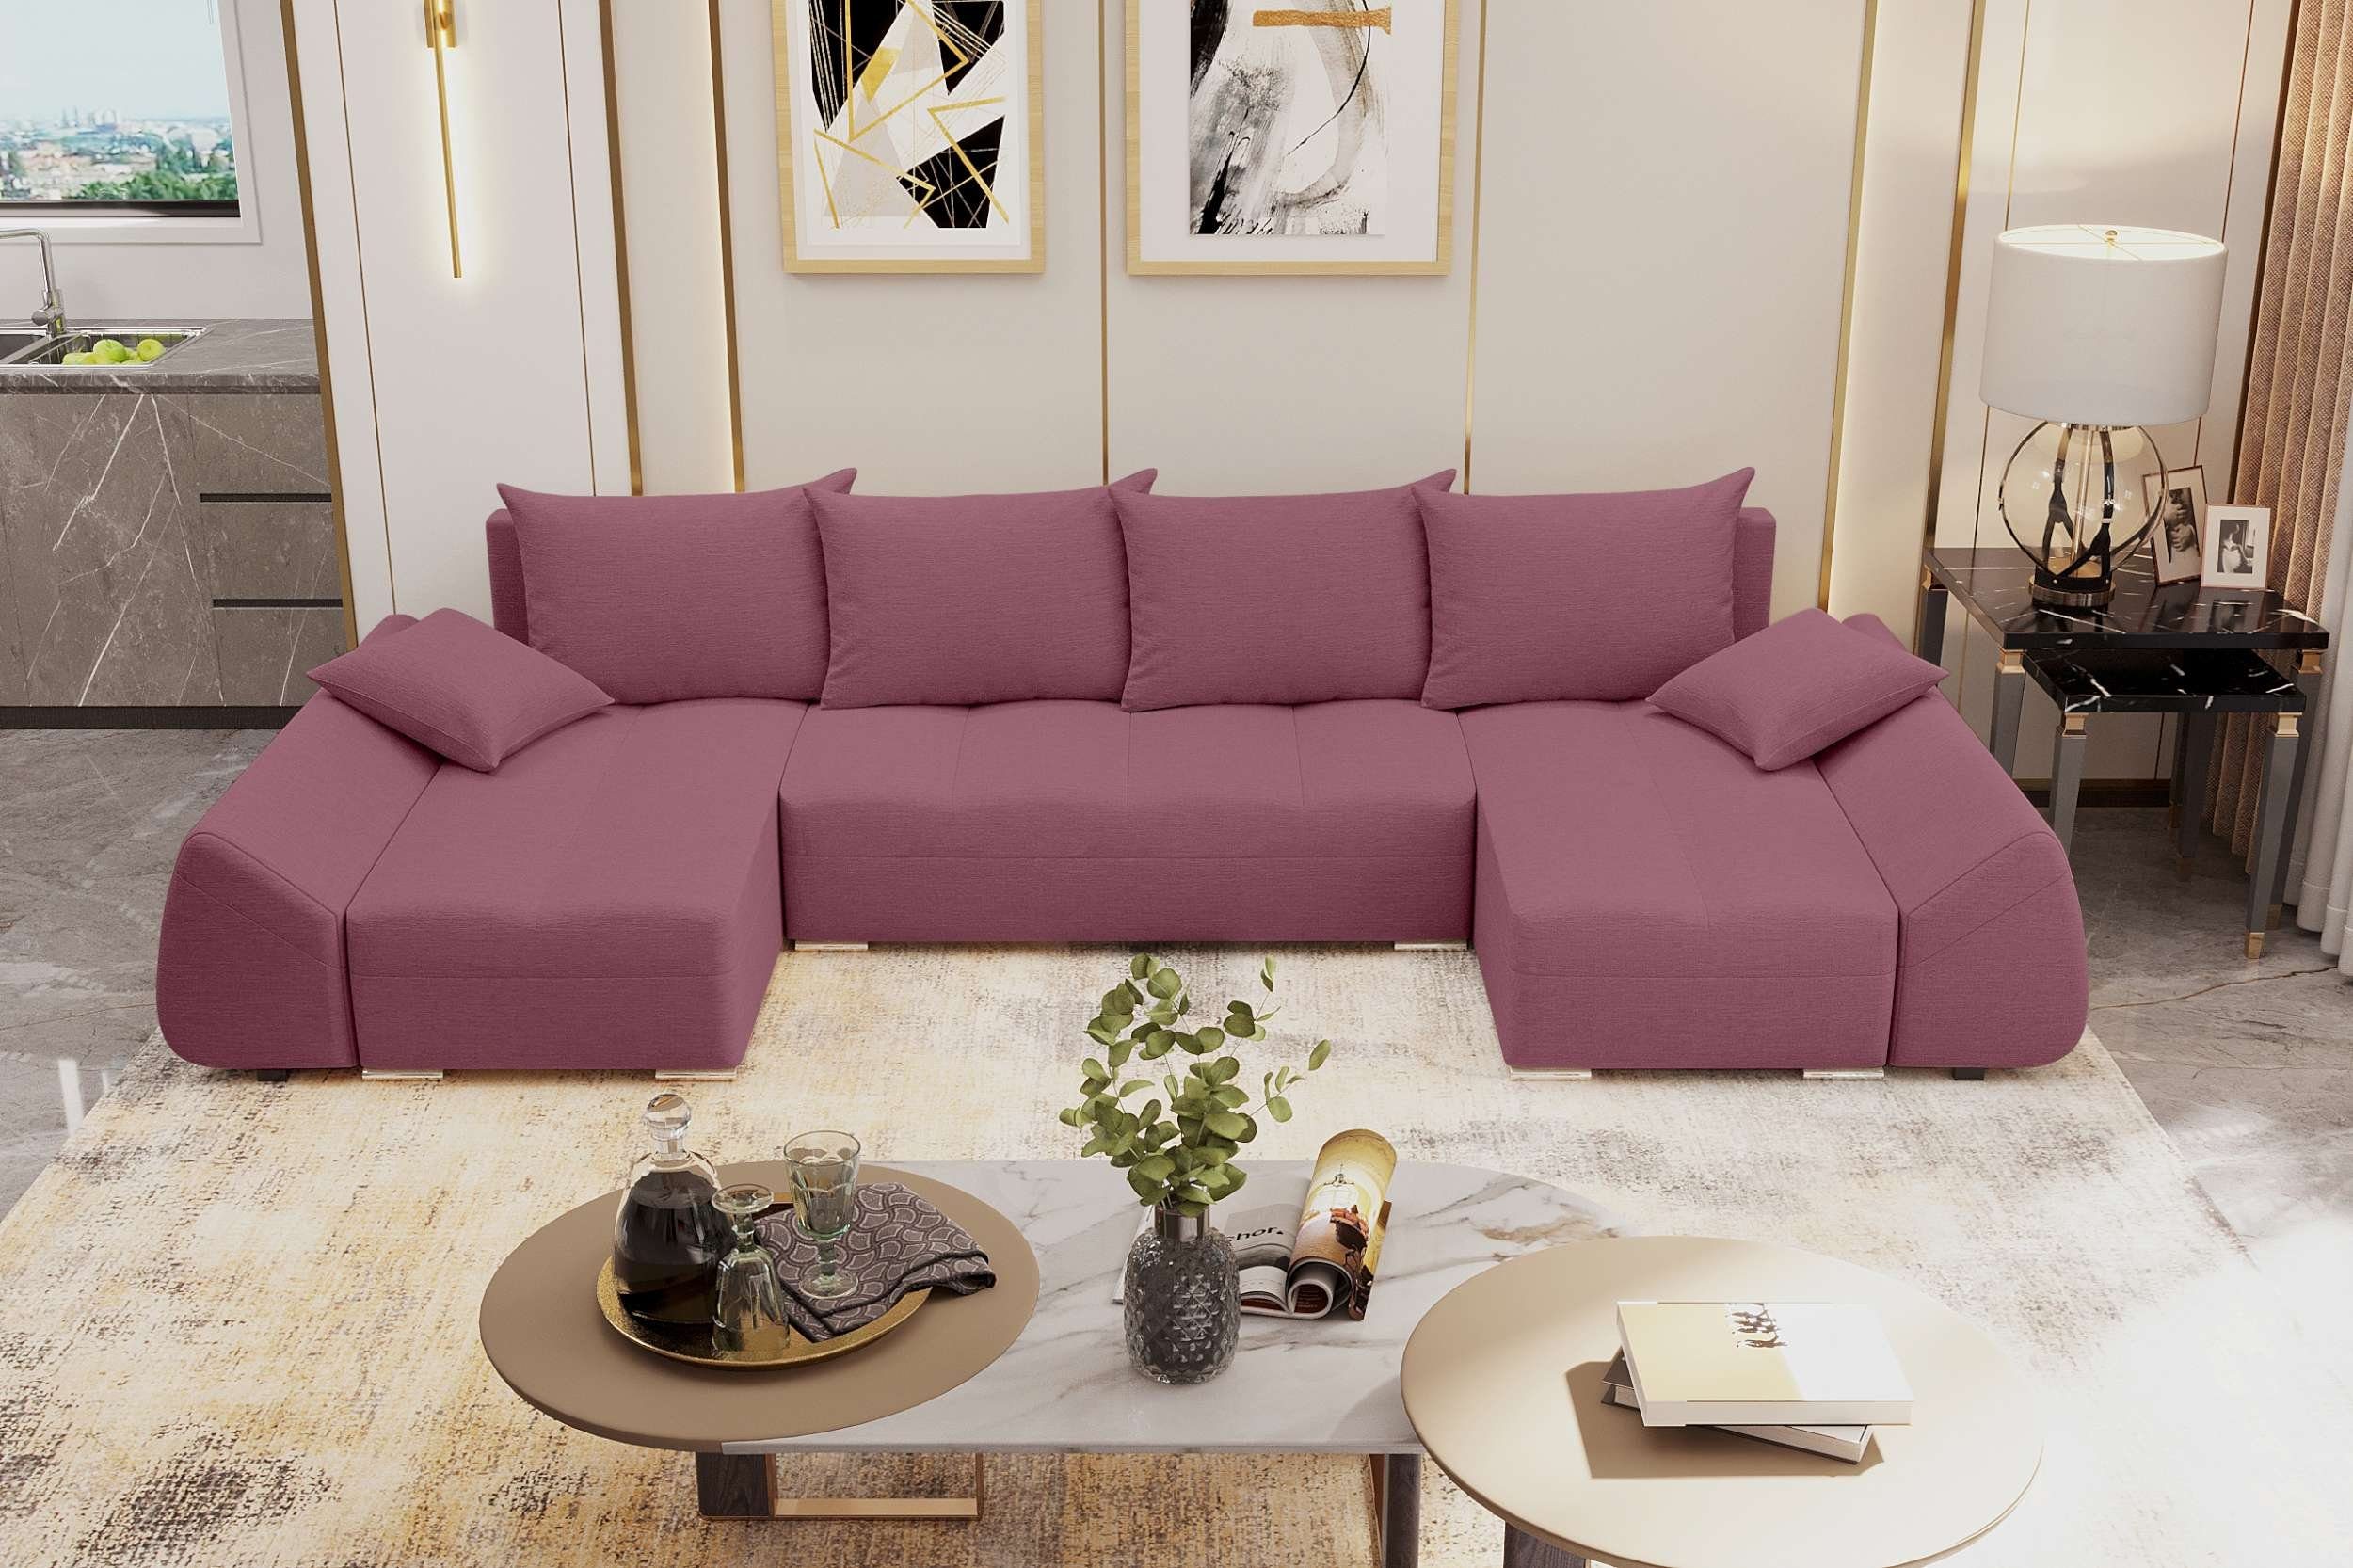 Bettkasten, Modern Madeira, Sofa, mit Wohnlandschaft mit Bettfunktion, Stylefy Sitzkomfort, U-Form, Design Eckcouch,